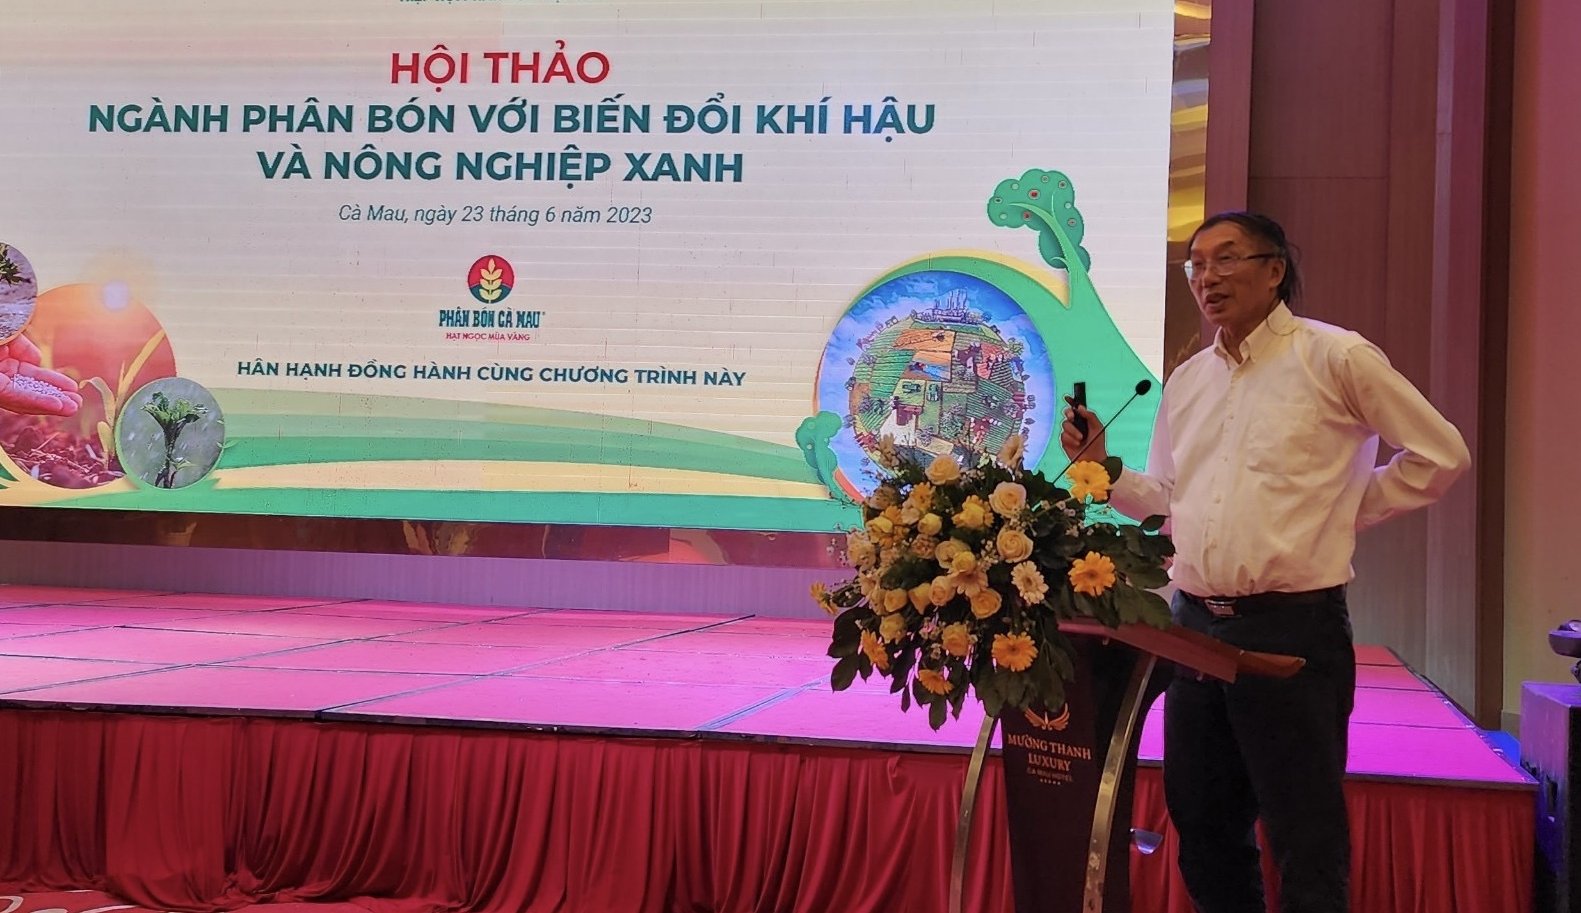 Theo TS Phùng Hà, Phó Chủ tịch, Tổng thư ký FAV, giảm phát thải trong ngành phân bón tại Việt Nam hiện nay là xu thế tất yếu nhưng cần lộ trình phù hợp. Ảnh: Nguyên Huân.